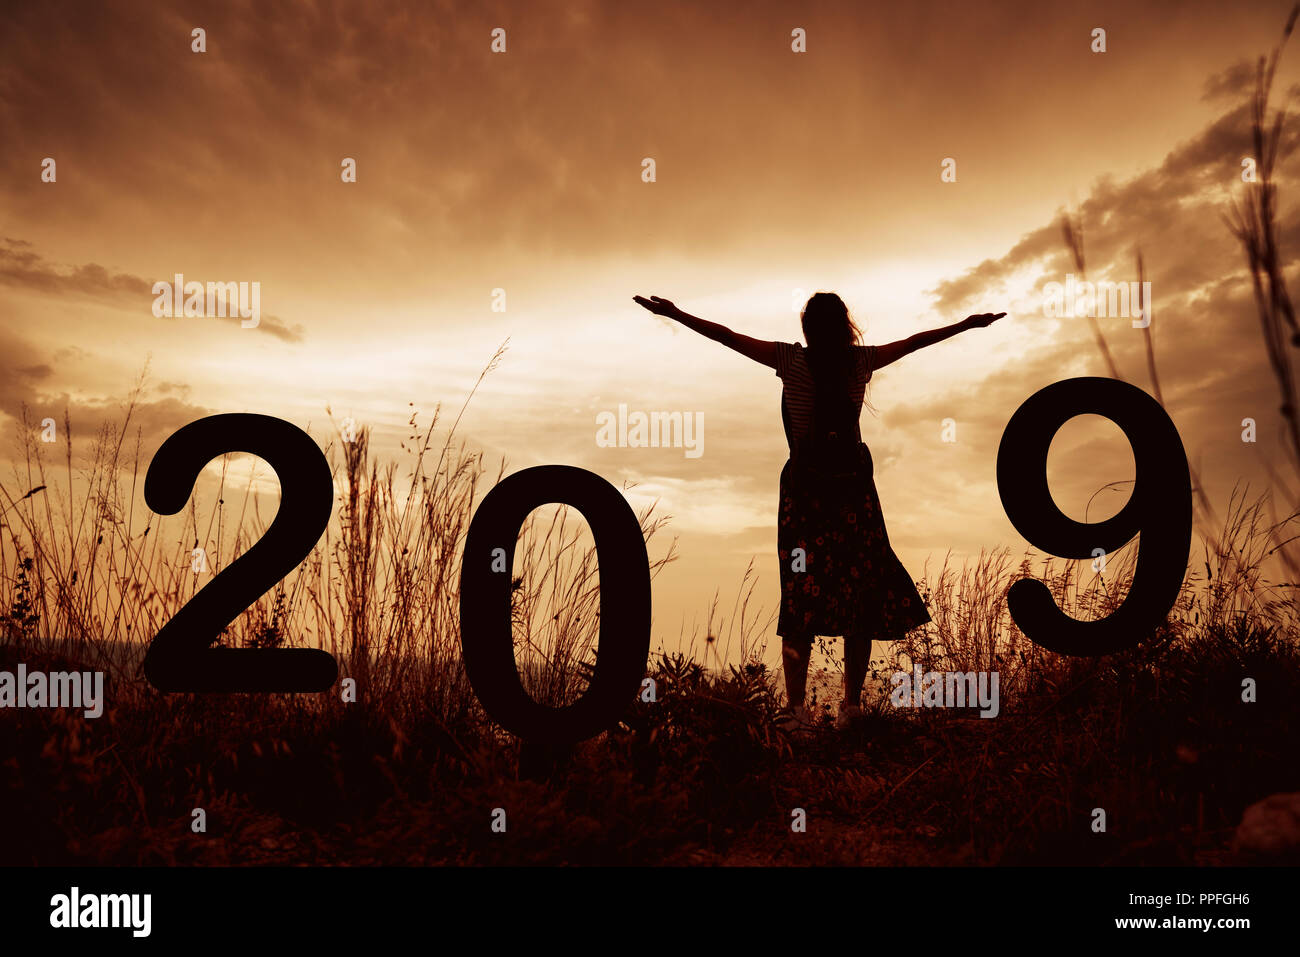 2019 Nouvelle année silhouette d'une fille avec les mains posées lors du lever ou du coucher du soleil d'or avec l'exemplaire de l'espace. Concept de joie, louange, adoration, liaison avec Banque D'Images